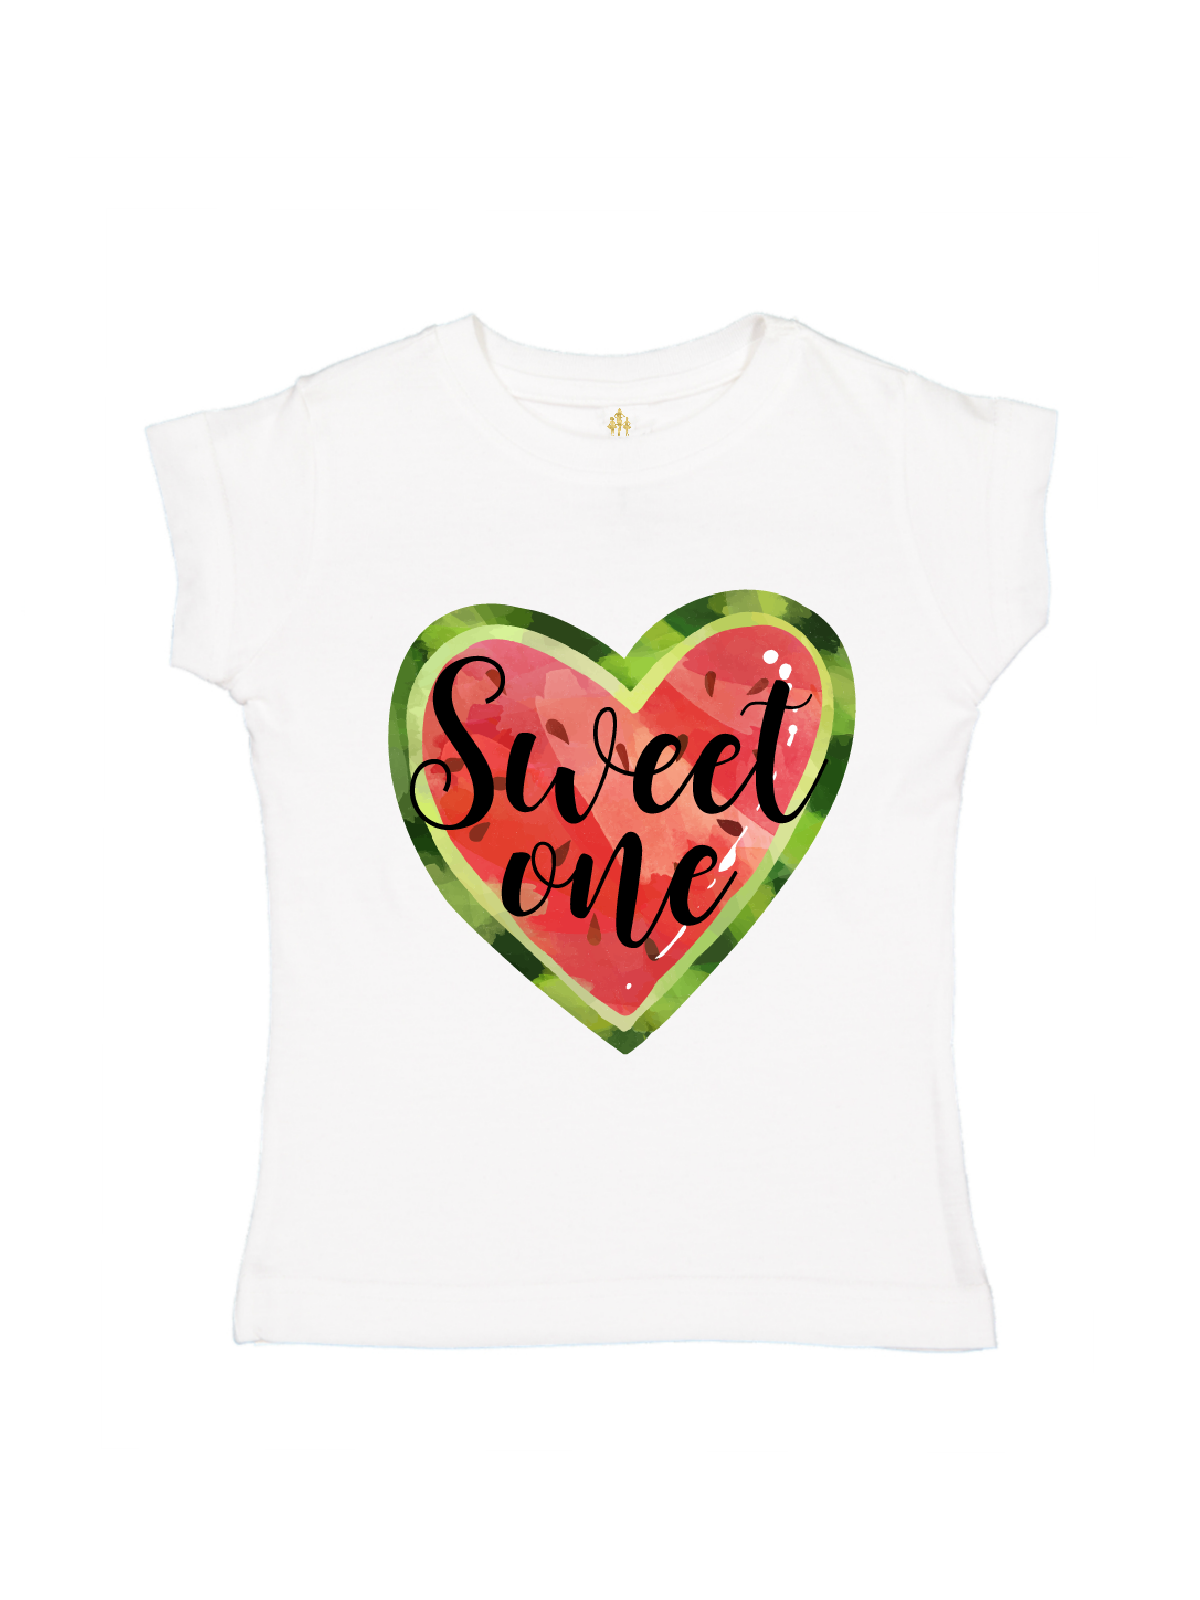 sweet one girls white t-shirt